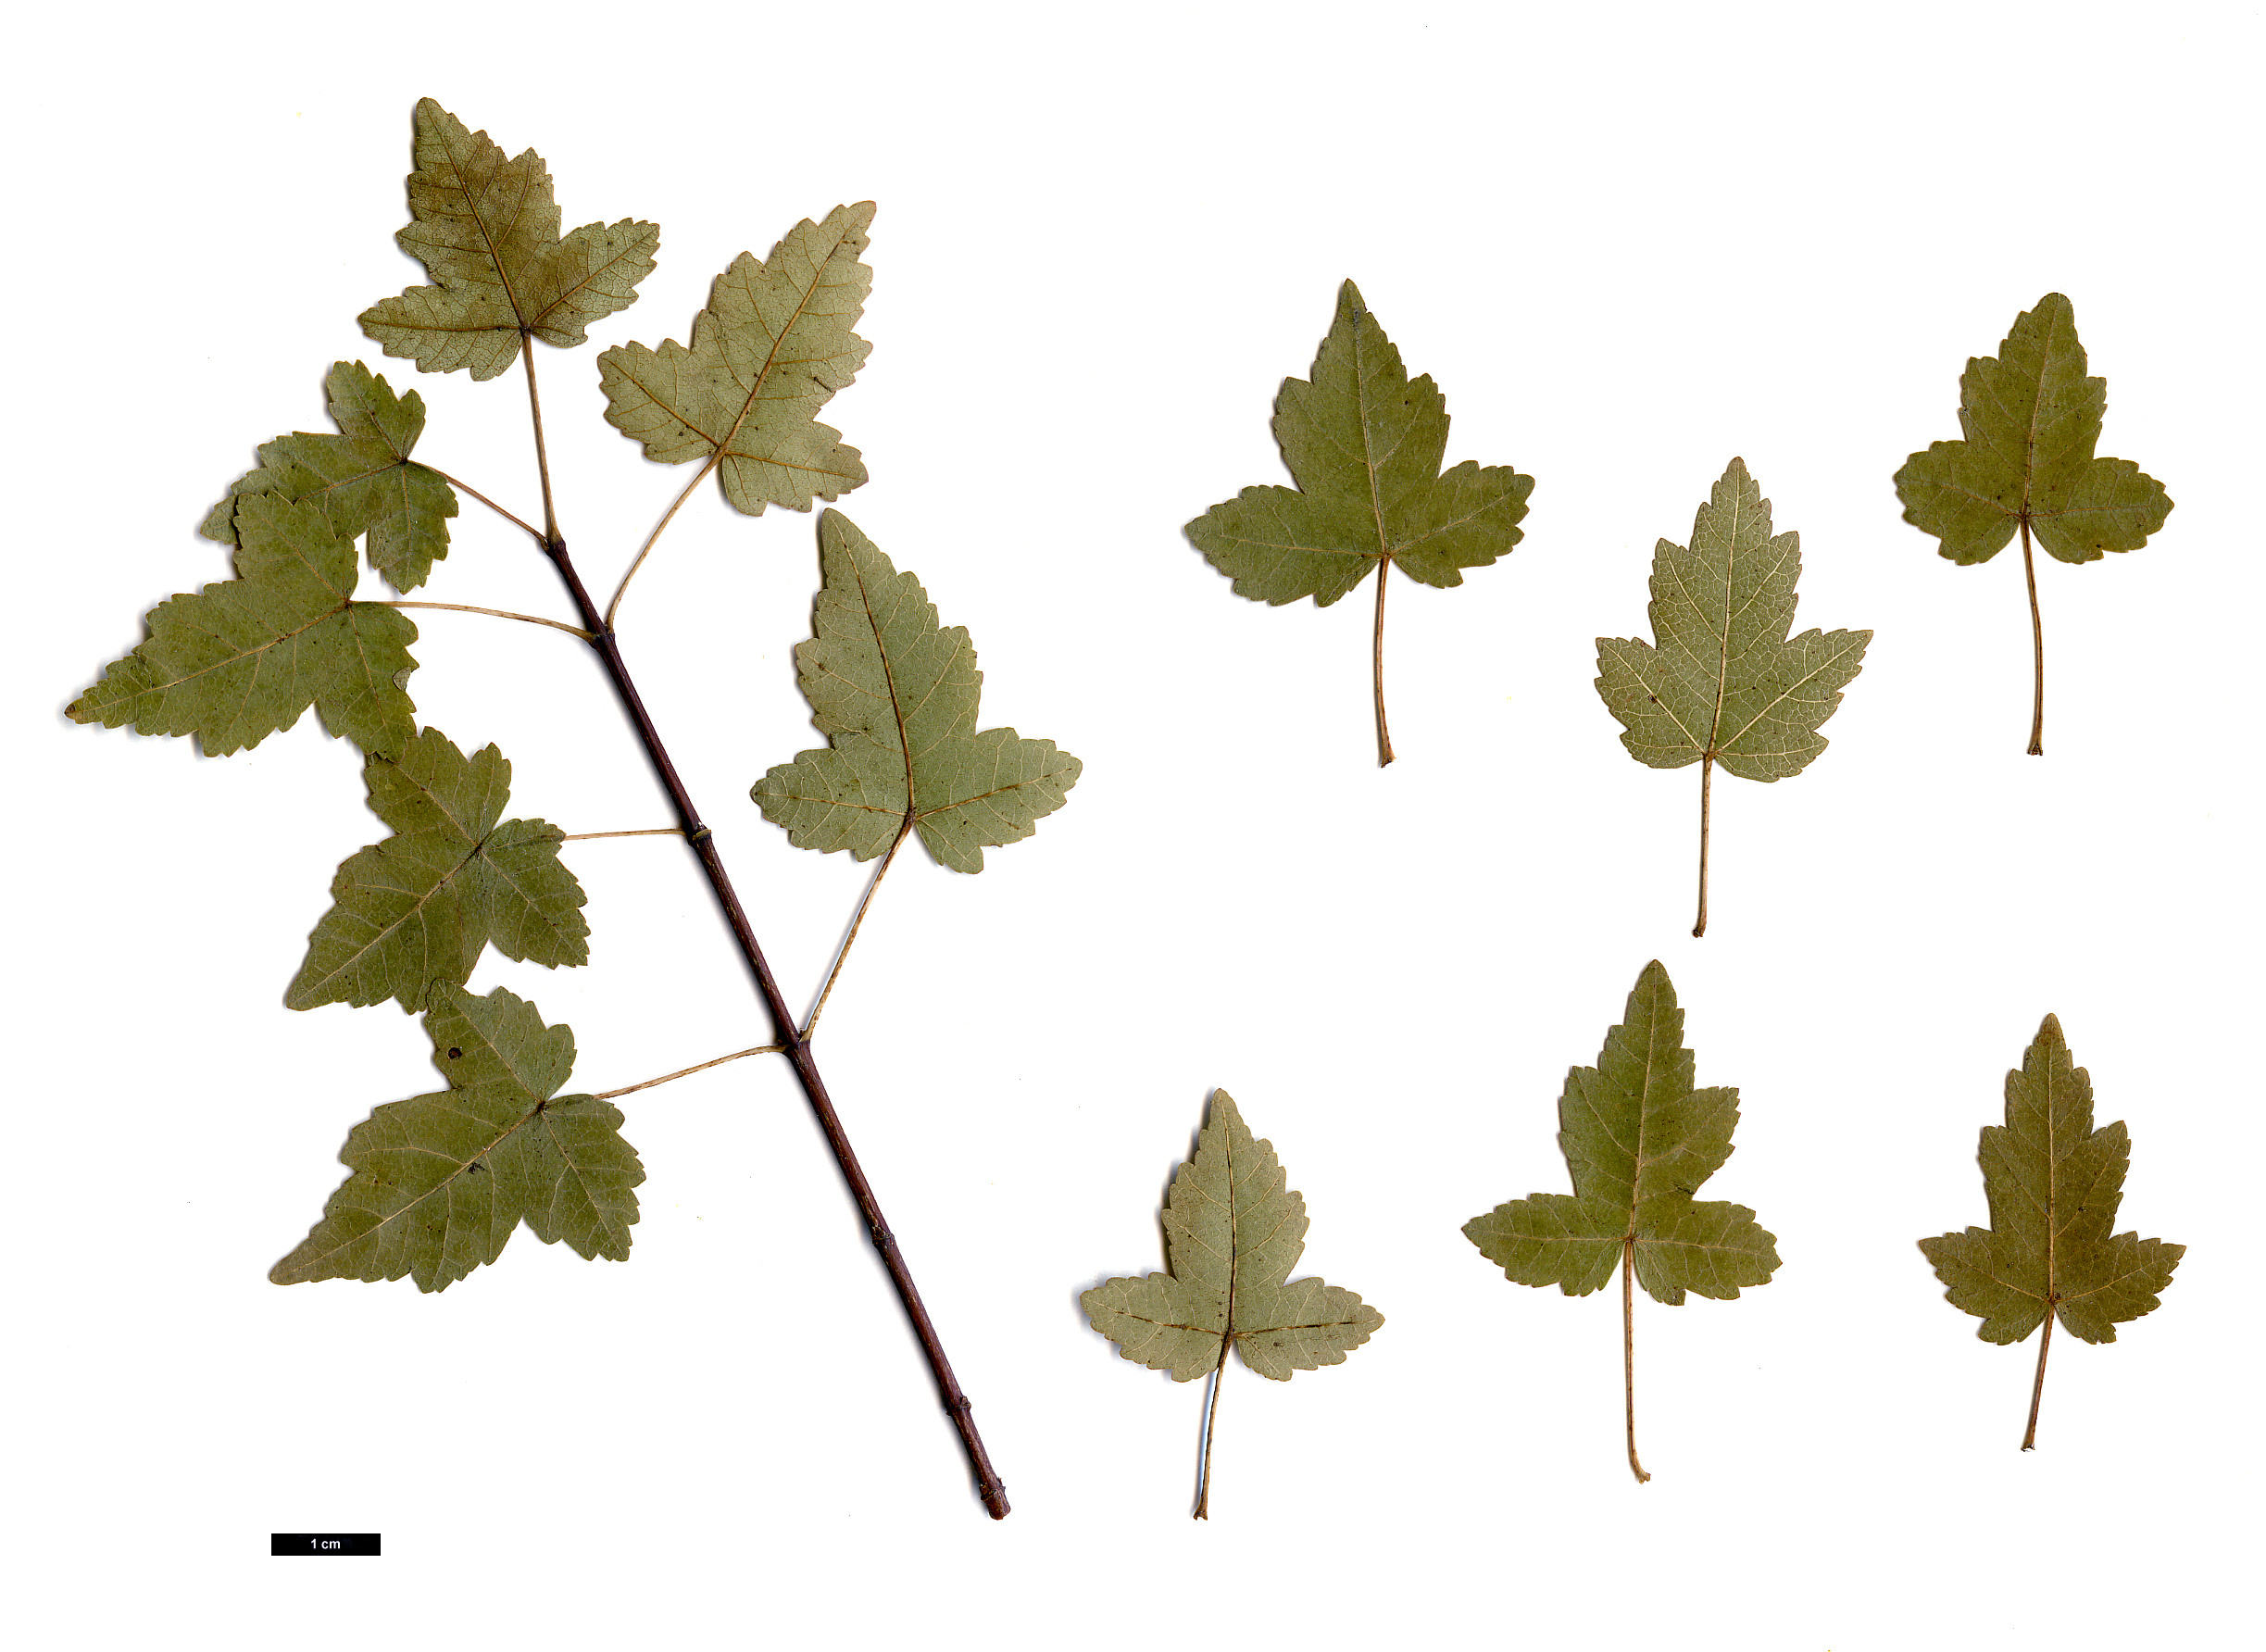 High resolution image: Family: Sapindaceae - Genus: Acer - Taxon: tataricum - SpeciesSub: subsp. semenovii